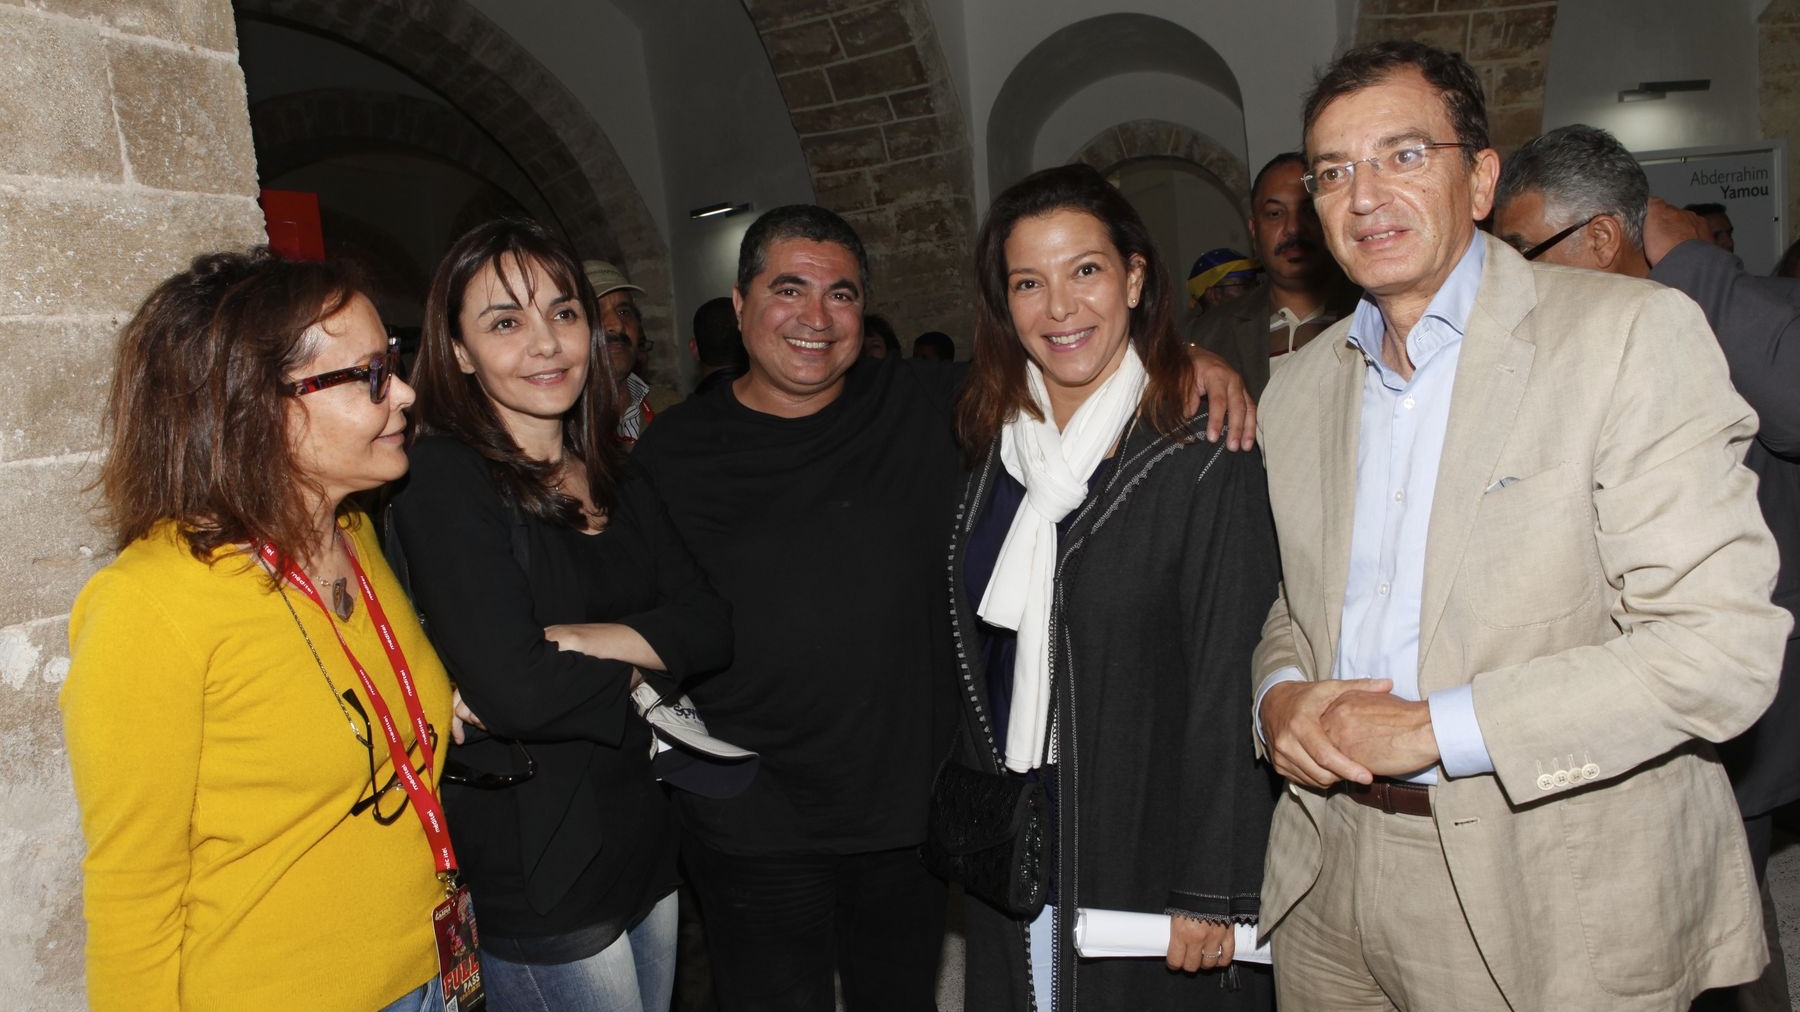 De nombreuses personnalités ont assisté au vernissage de l'exposition de l'artiste peintre et écrivain Mahi Binebine. Parmi elles, Mohamed Amine Sbihi, ministre de la Culture
